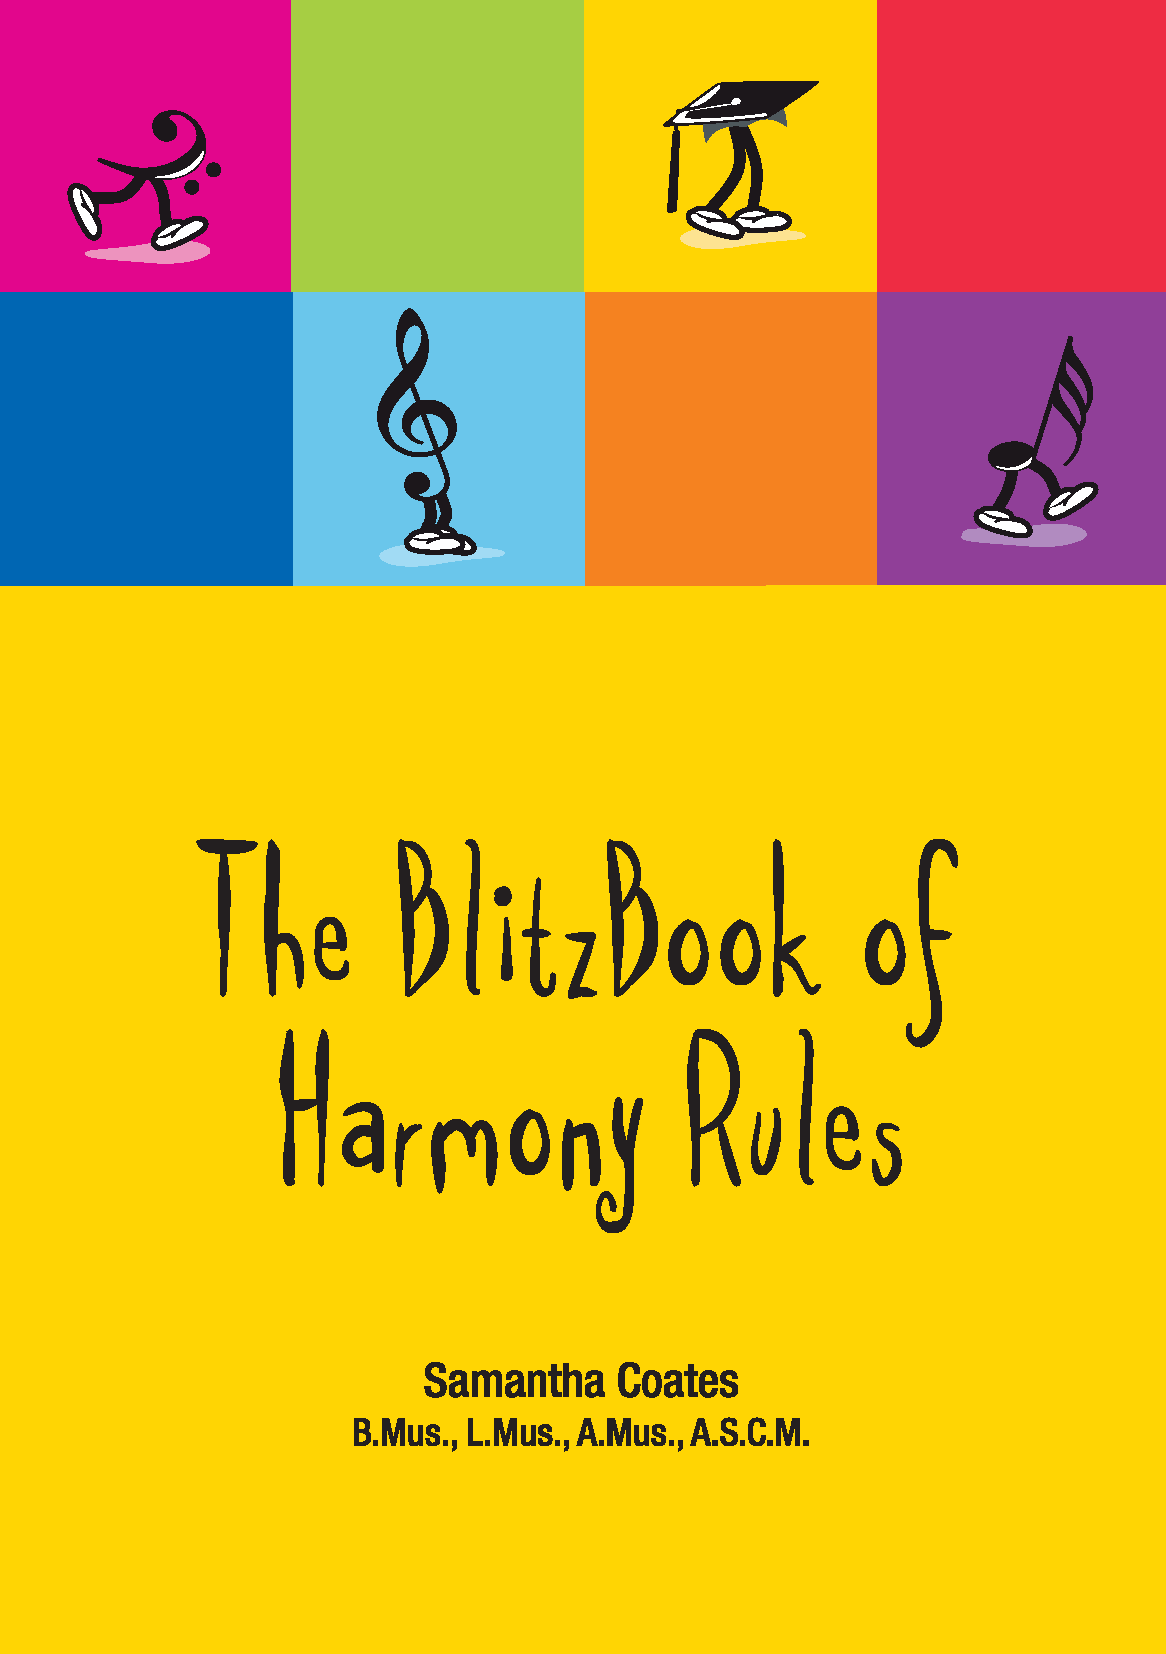 Harmony Rules